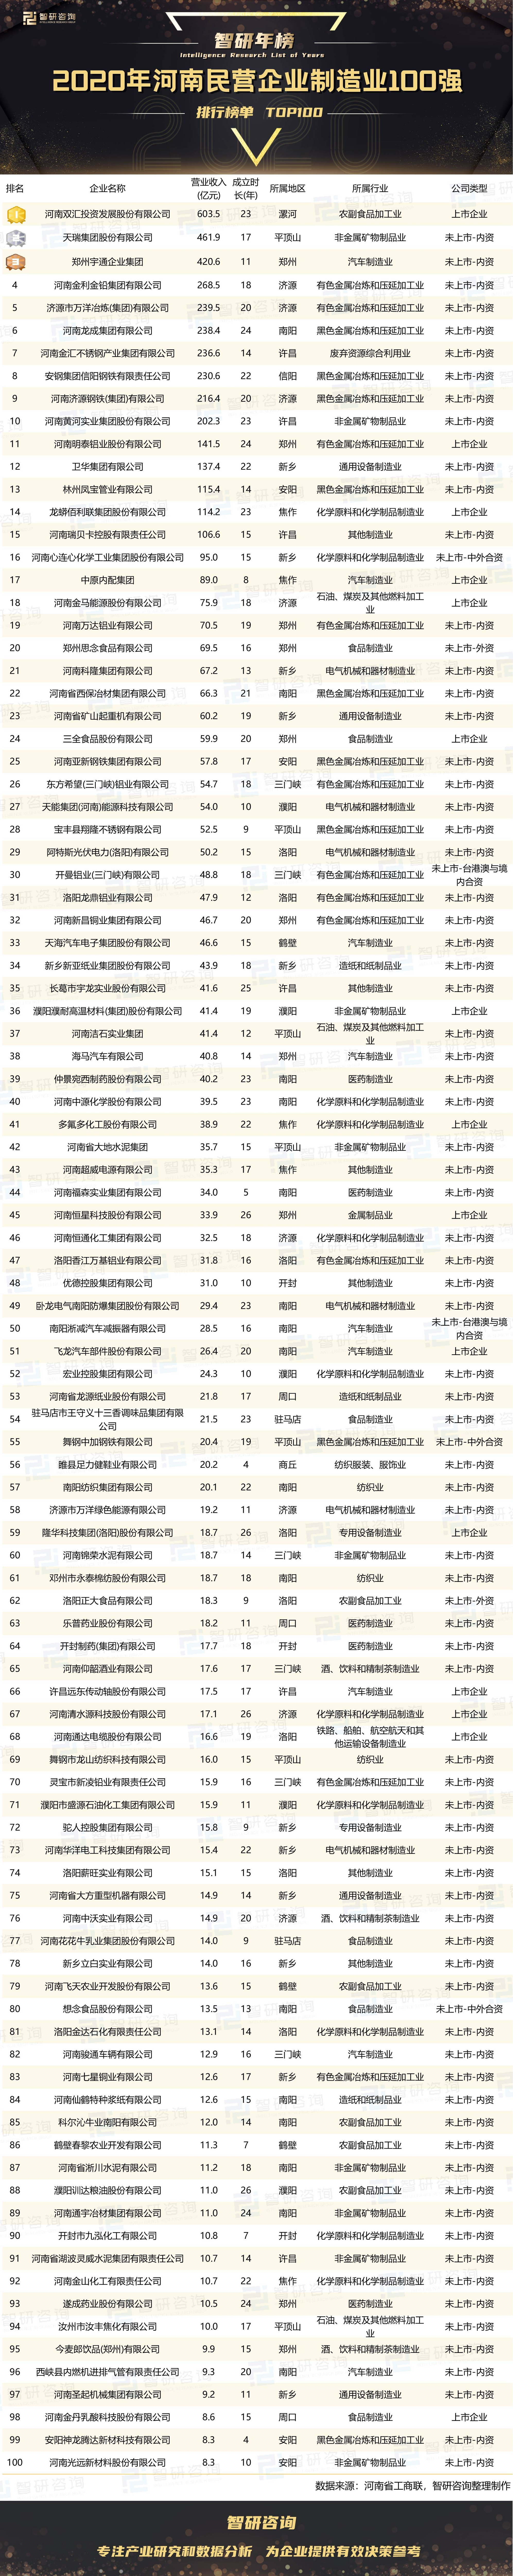 制造业排行榜_2020年河南民营企业制造业100强排行榜:1家上市企业位居榜单榜首